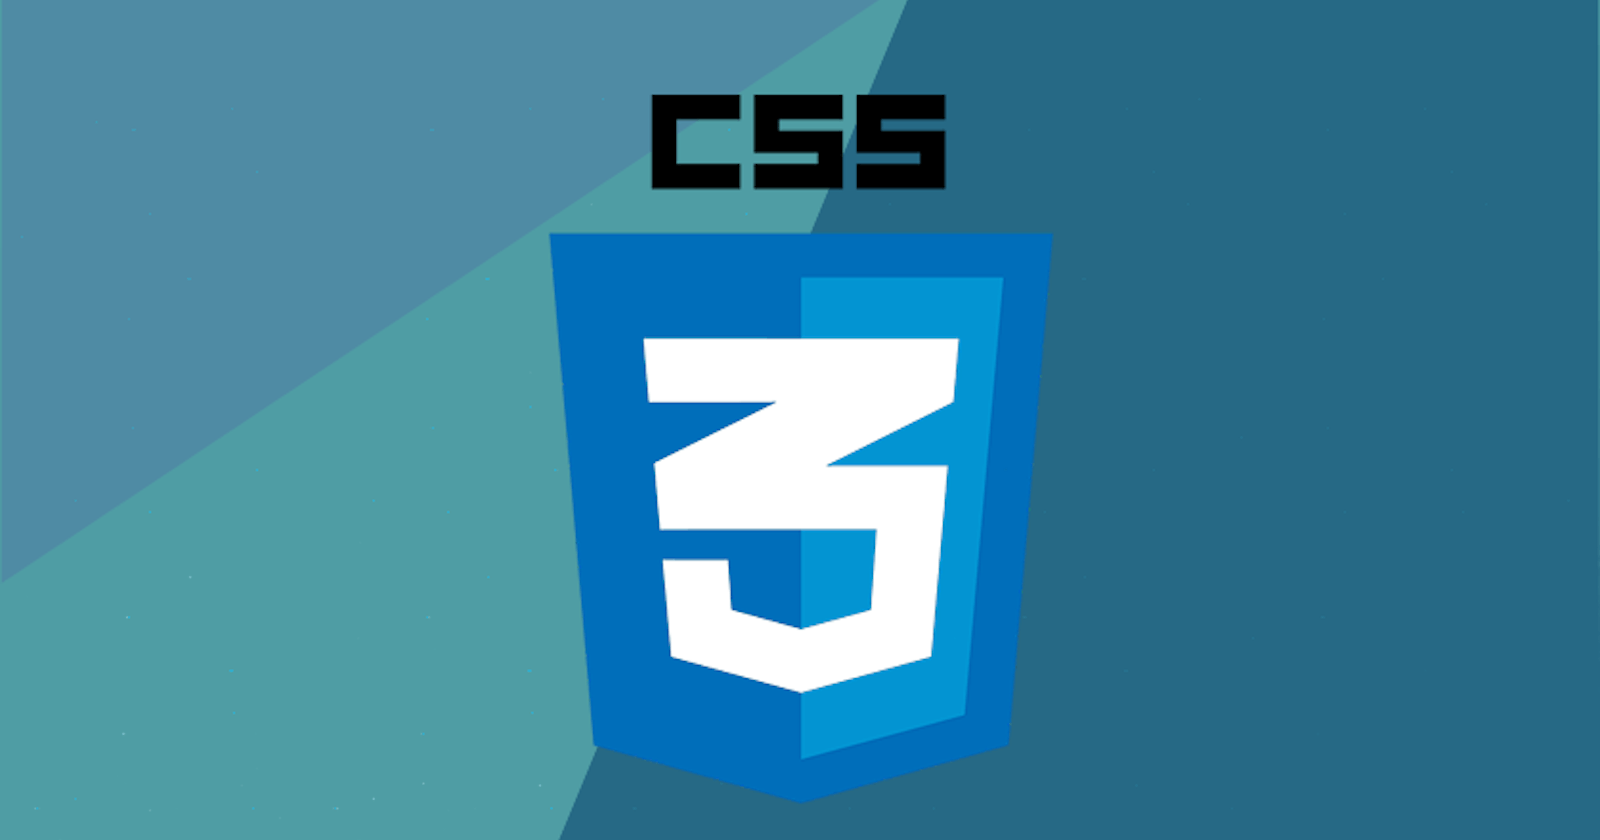 2+ years of writing CSS: From Zero to Style-Hero